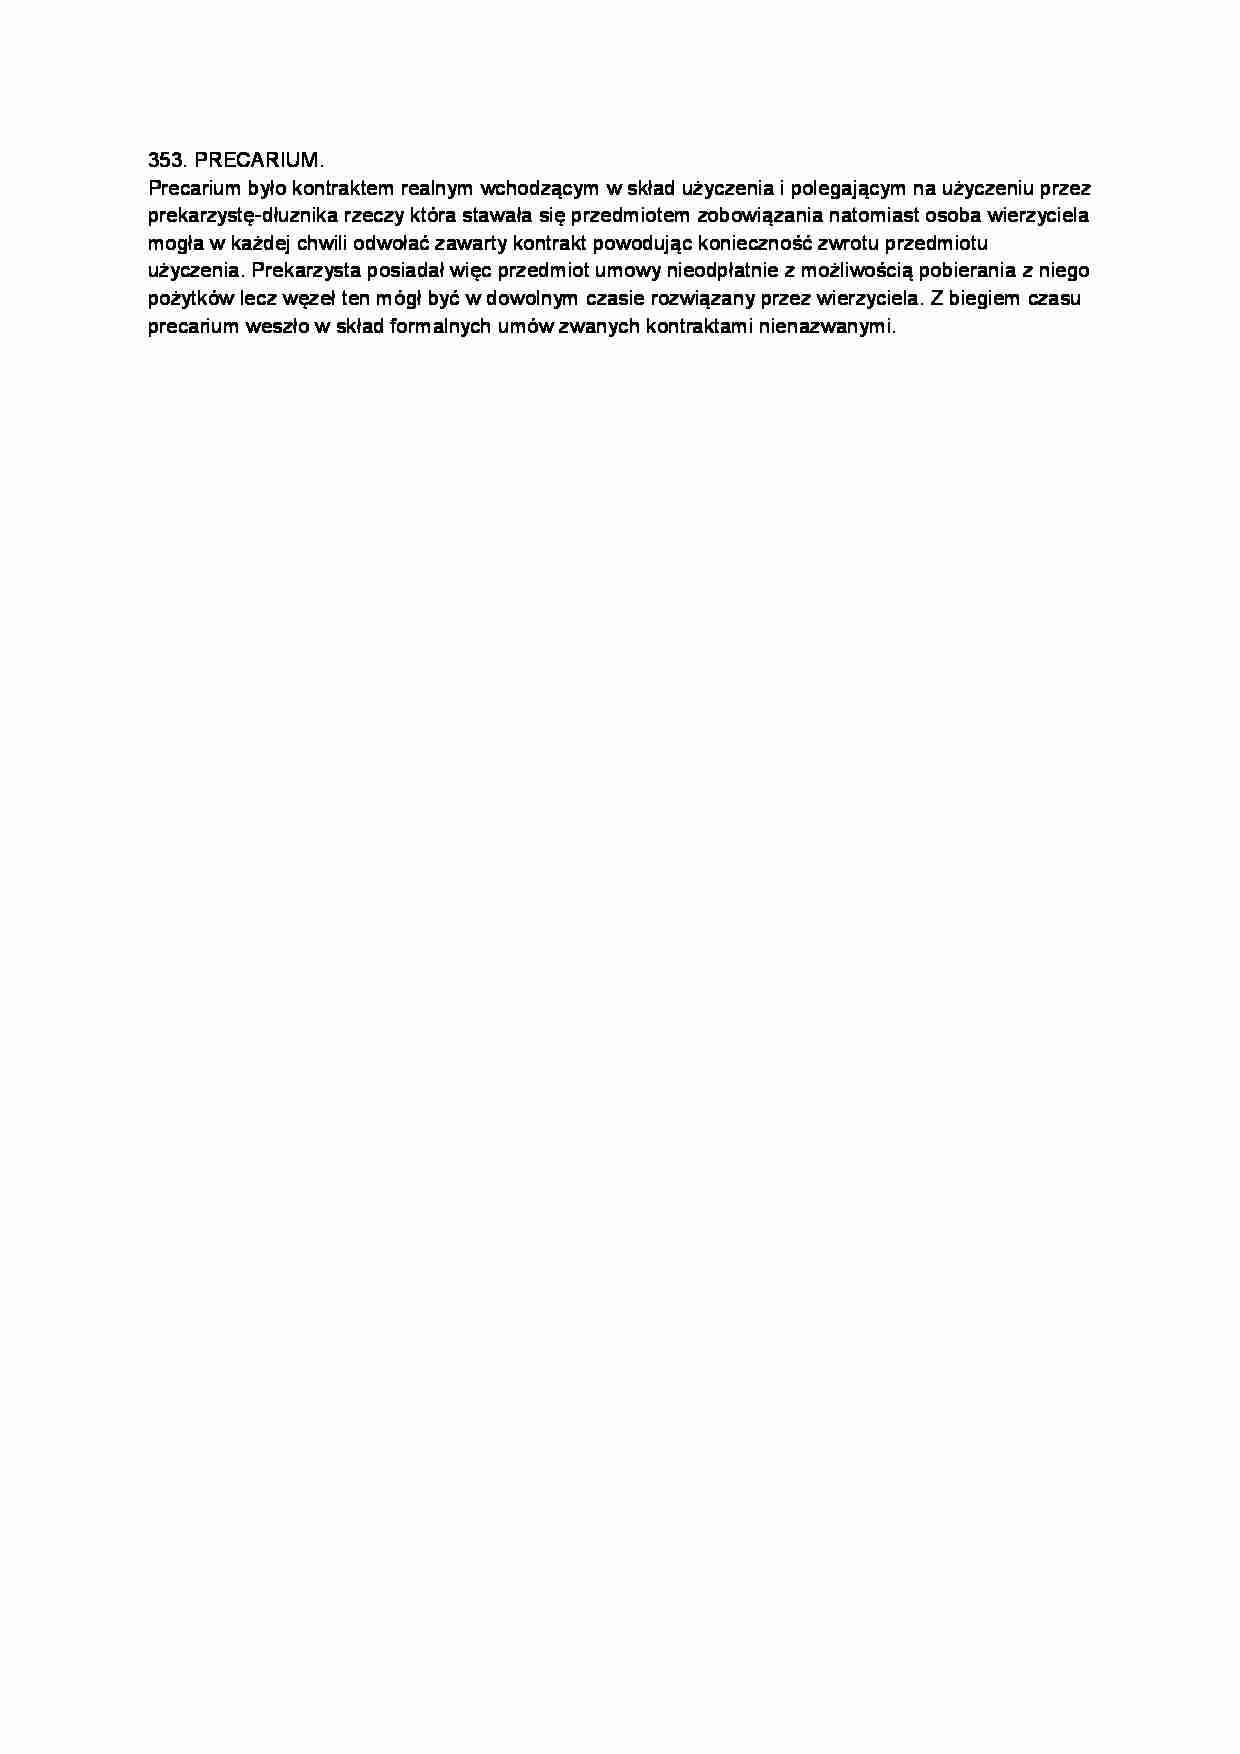 Precarium-opracowanie - strona 1